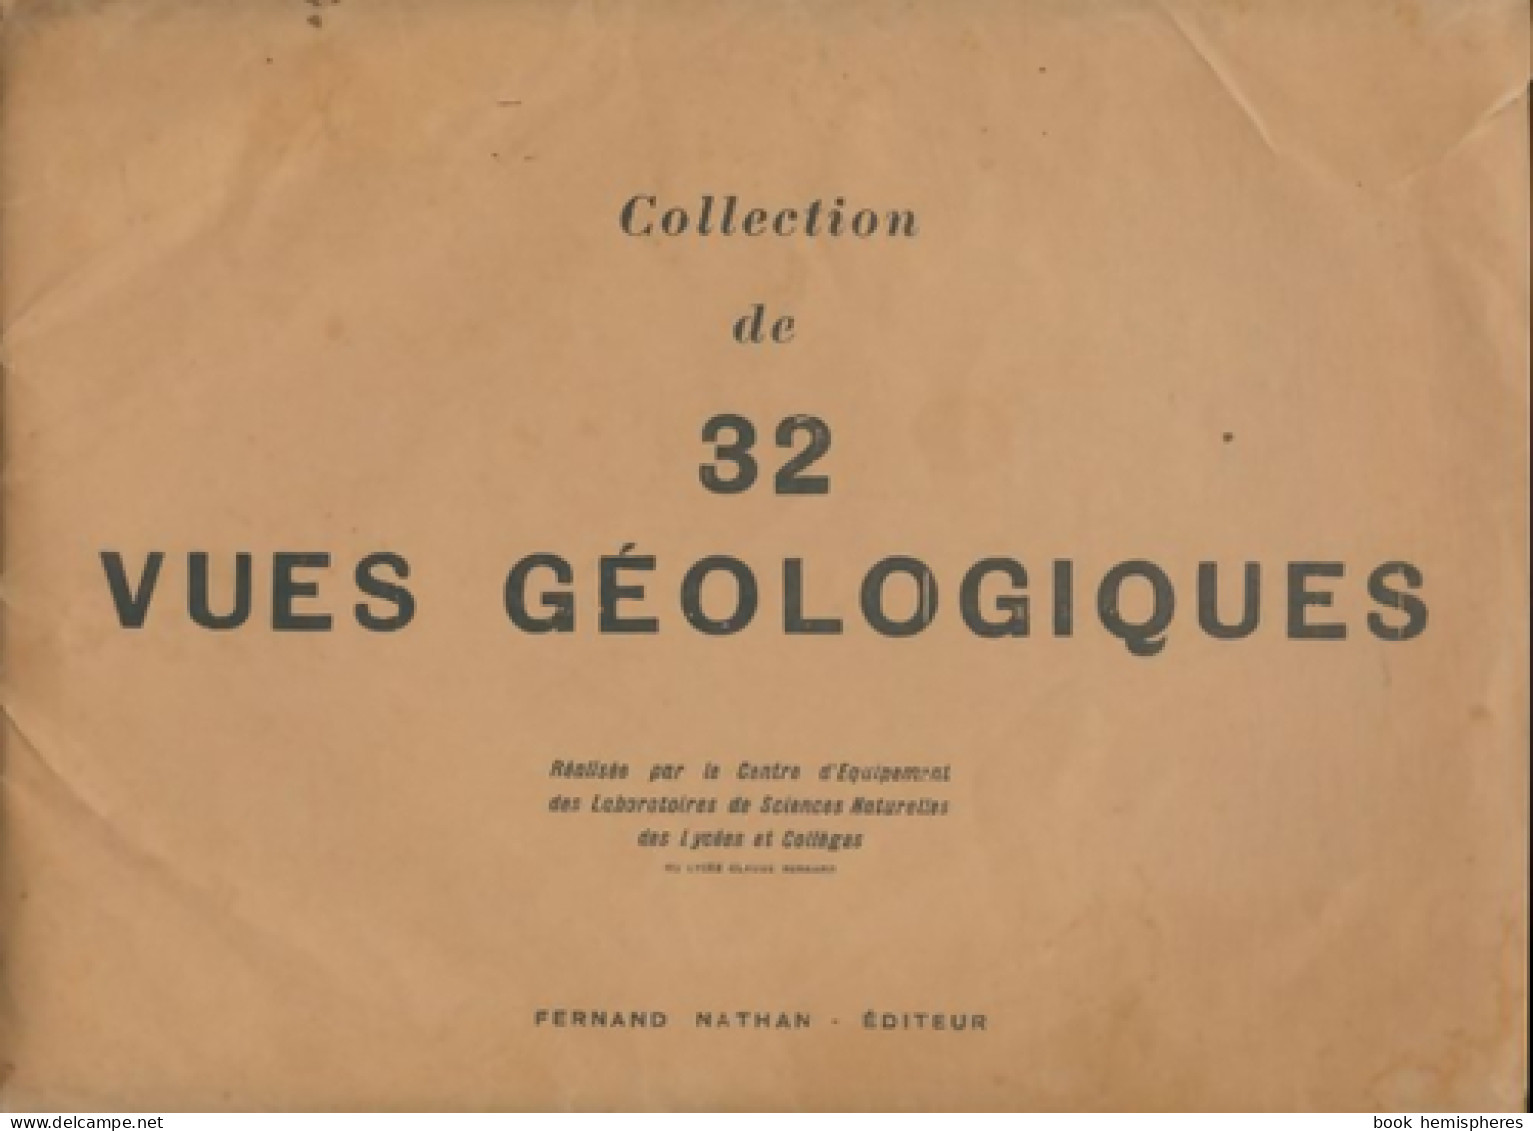 Collection De 32 Vues Géologiques (0) De Collectif - Unclassified